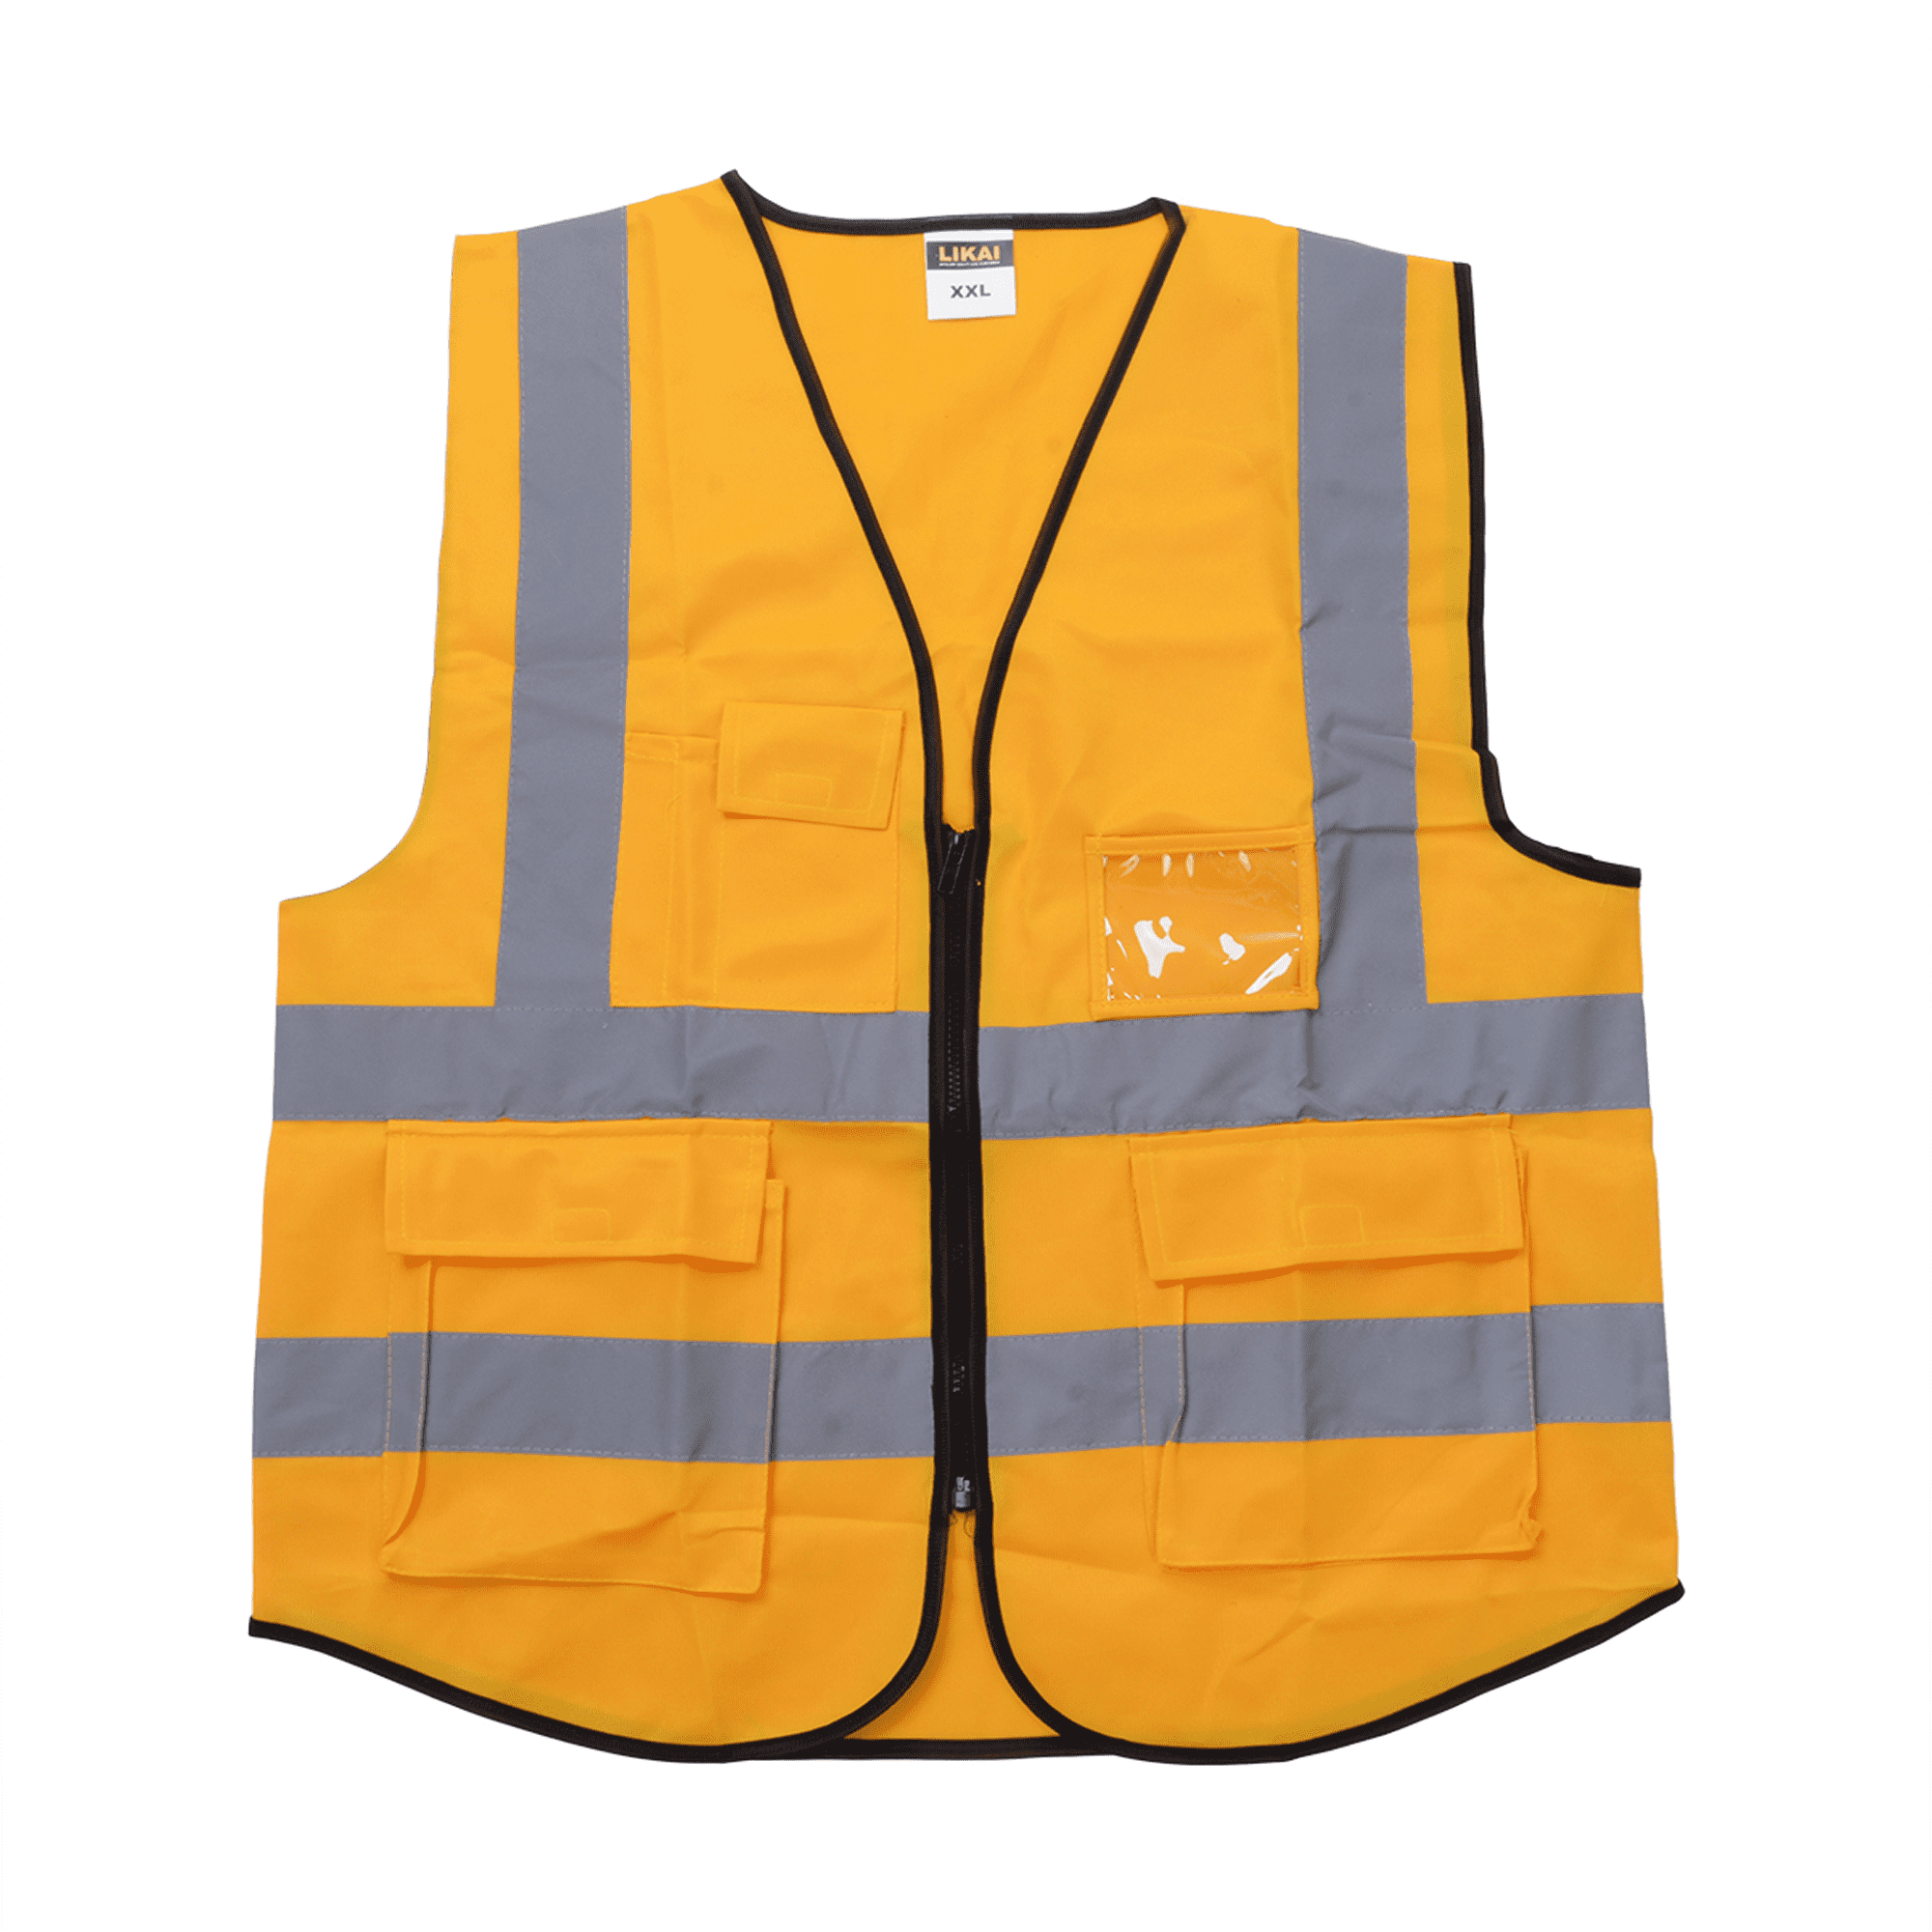 Details about   Safety Work Coat Jacket Reflective Short Sleeve Top Hi Viz Visibility Vest Shirt 